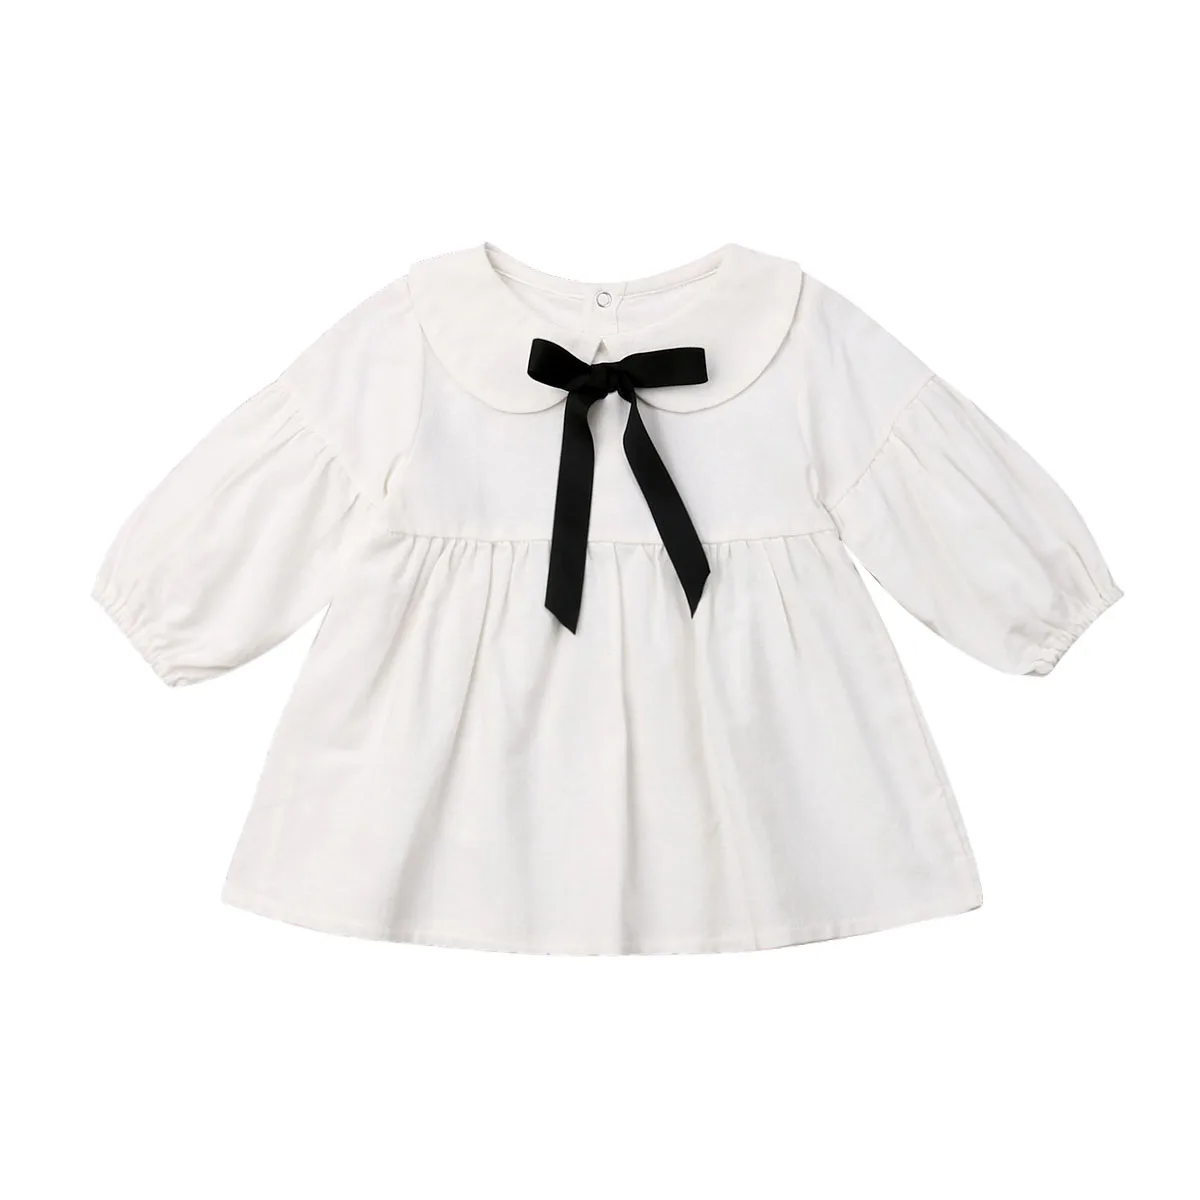 Однотонное платье с длинными рукавами для маленьких девочек кружевные вечерние платья с оборками, модное милое хлопковое платье принцессы, качественная одежда, От 6 месяцев до 3 лет - Цвет: Белый